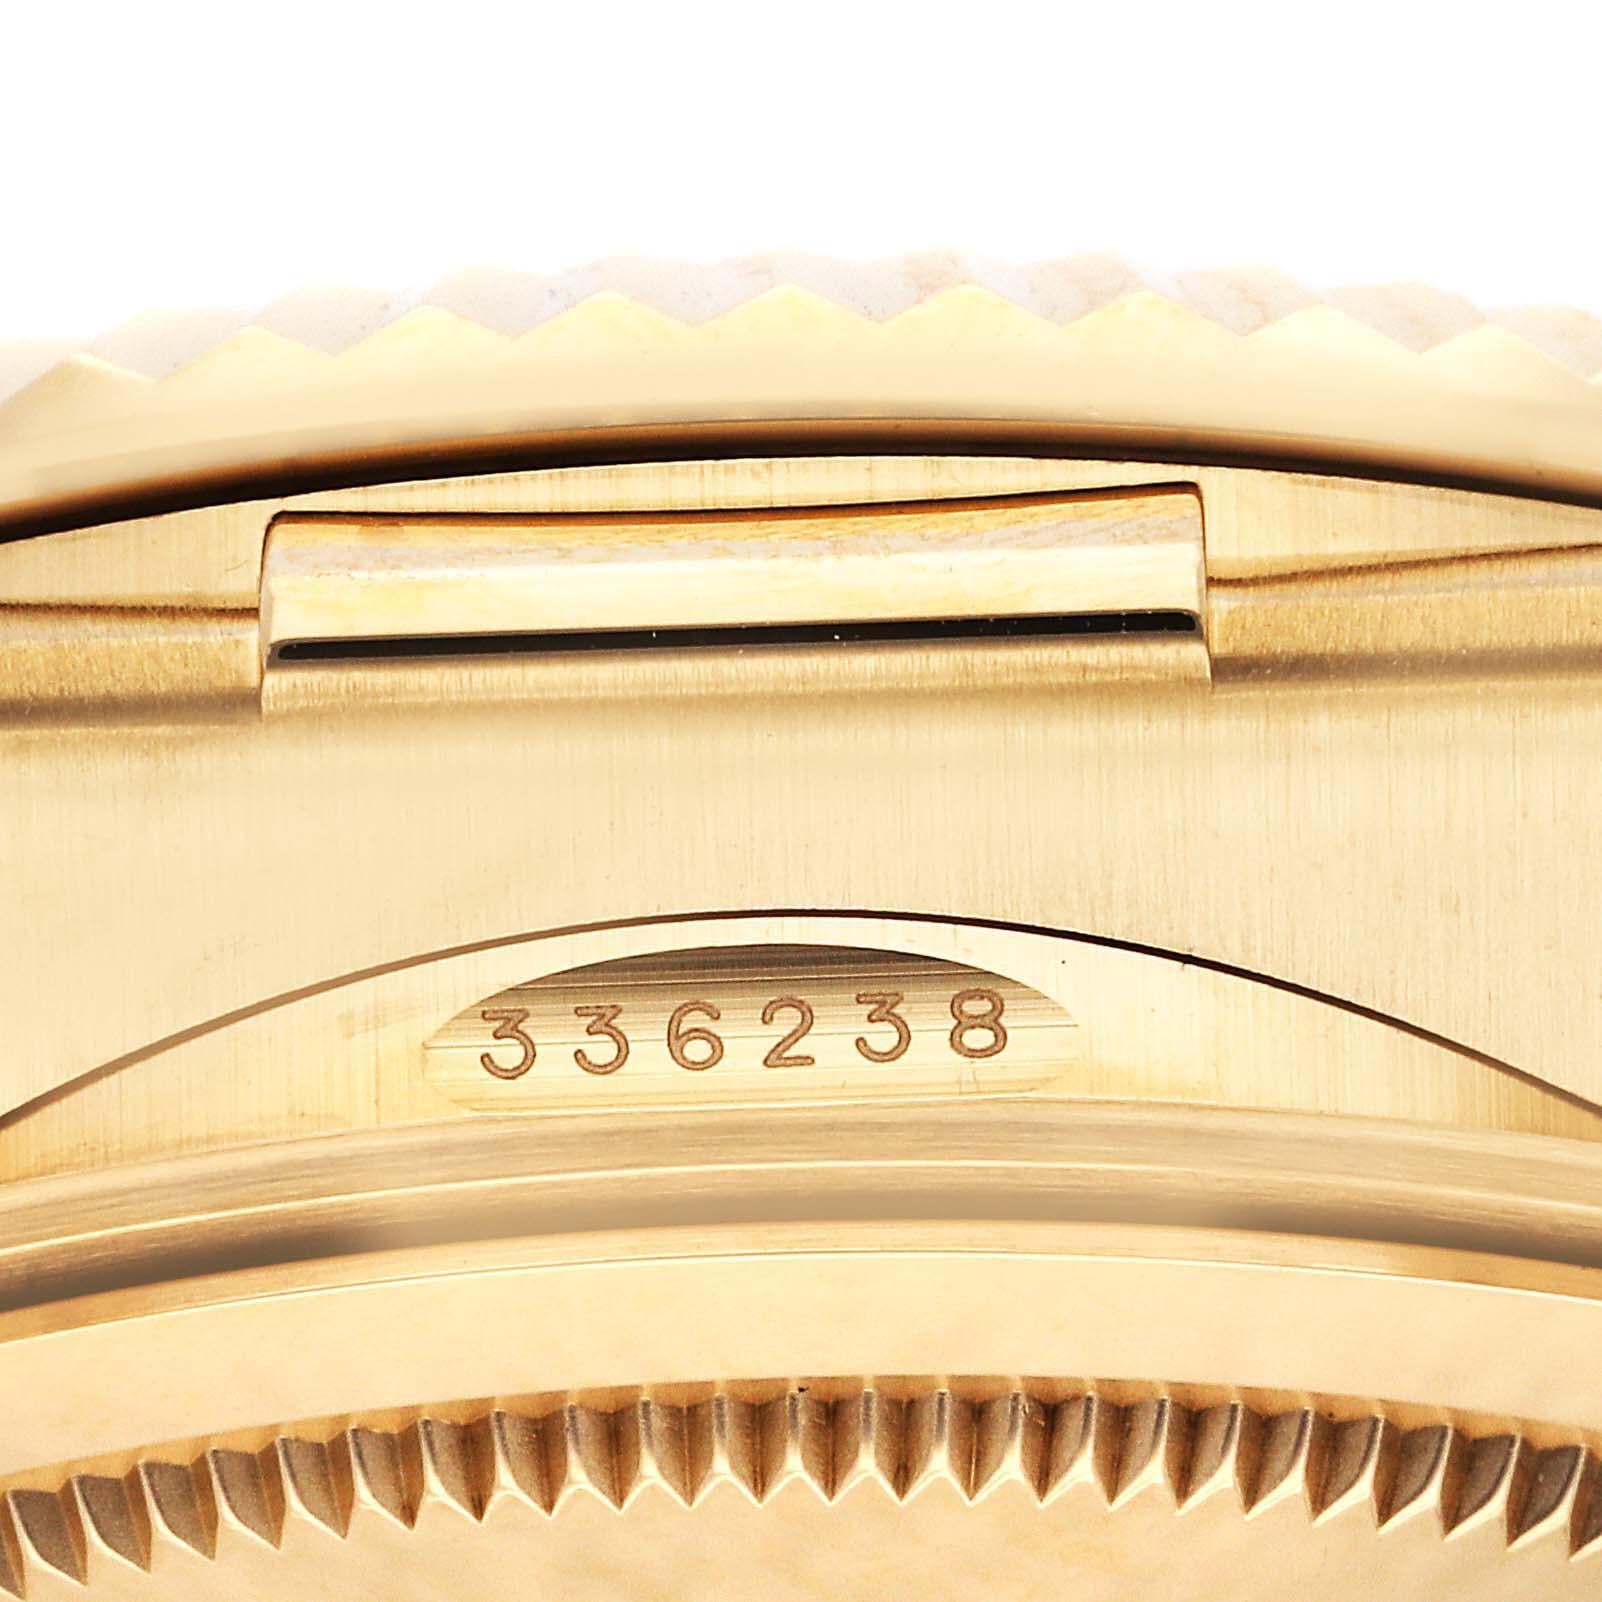 Rolex Sky-Dweller Yellow Gold Black Dial Oysterflex Mens Watch 336238 Box Card. Mouvement automatique à remontage automatique, officiellement certifié chronomètre. Double fuseau horaire, calendrier annuel. Ressort parachromatique bleu